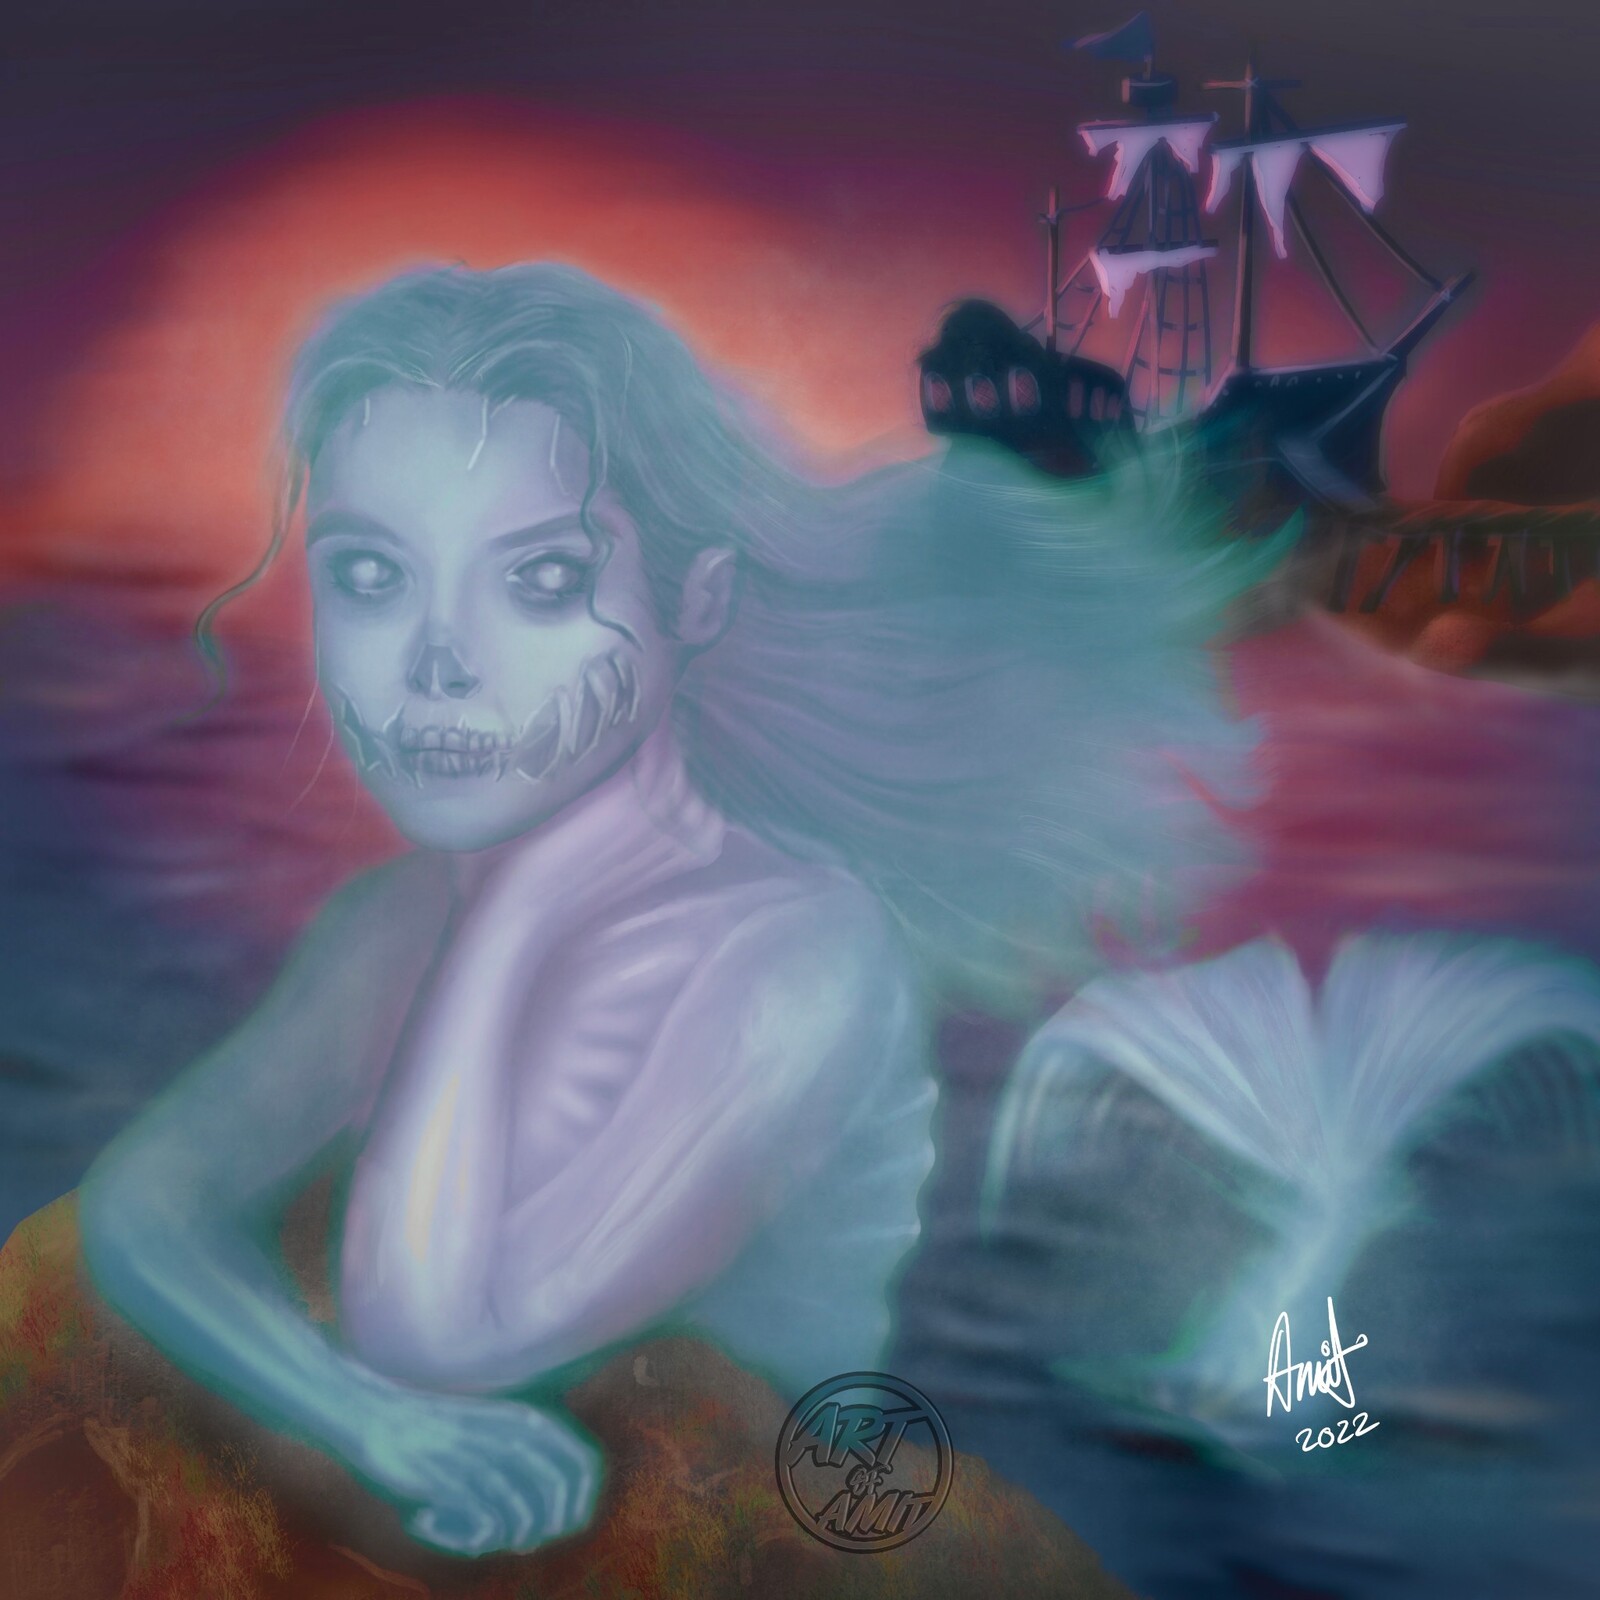 The mermaid of Melee